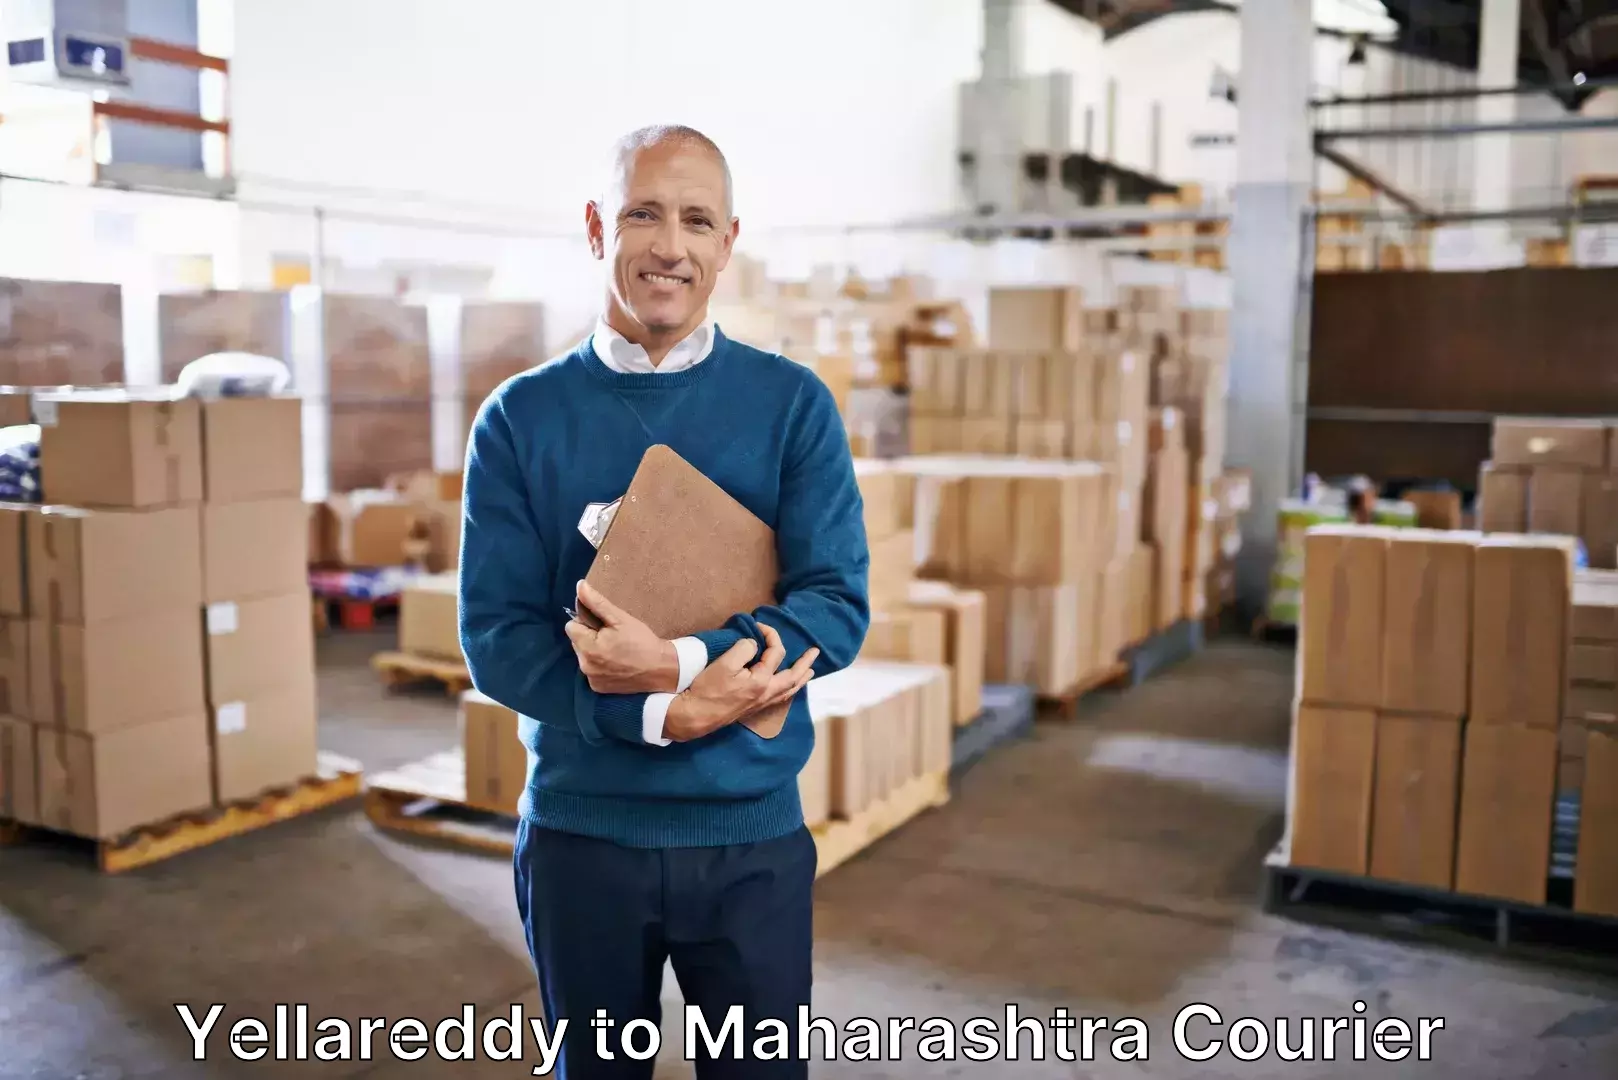 Luggage delivery optimization Yellareddy to Maharashtra